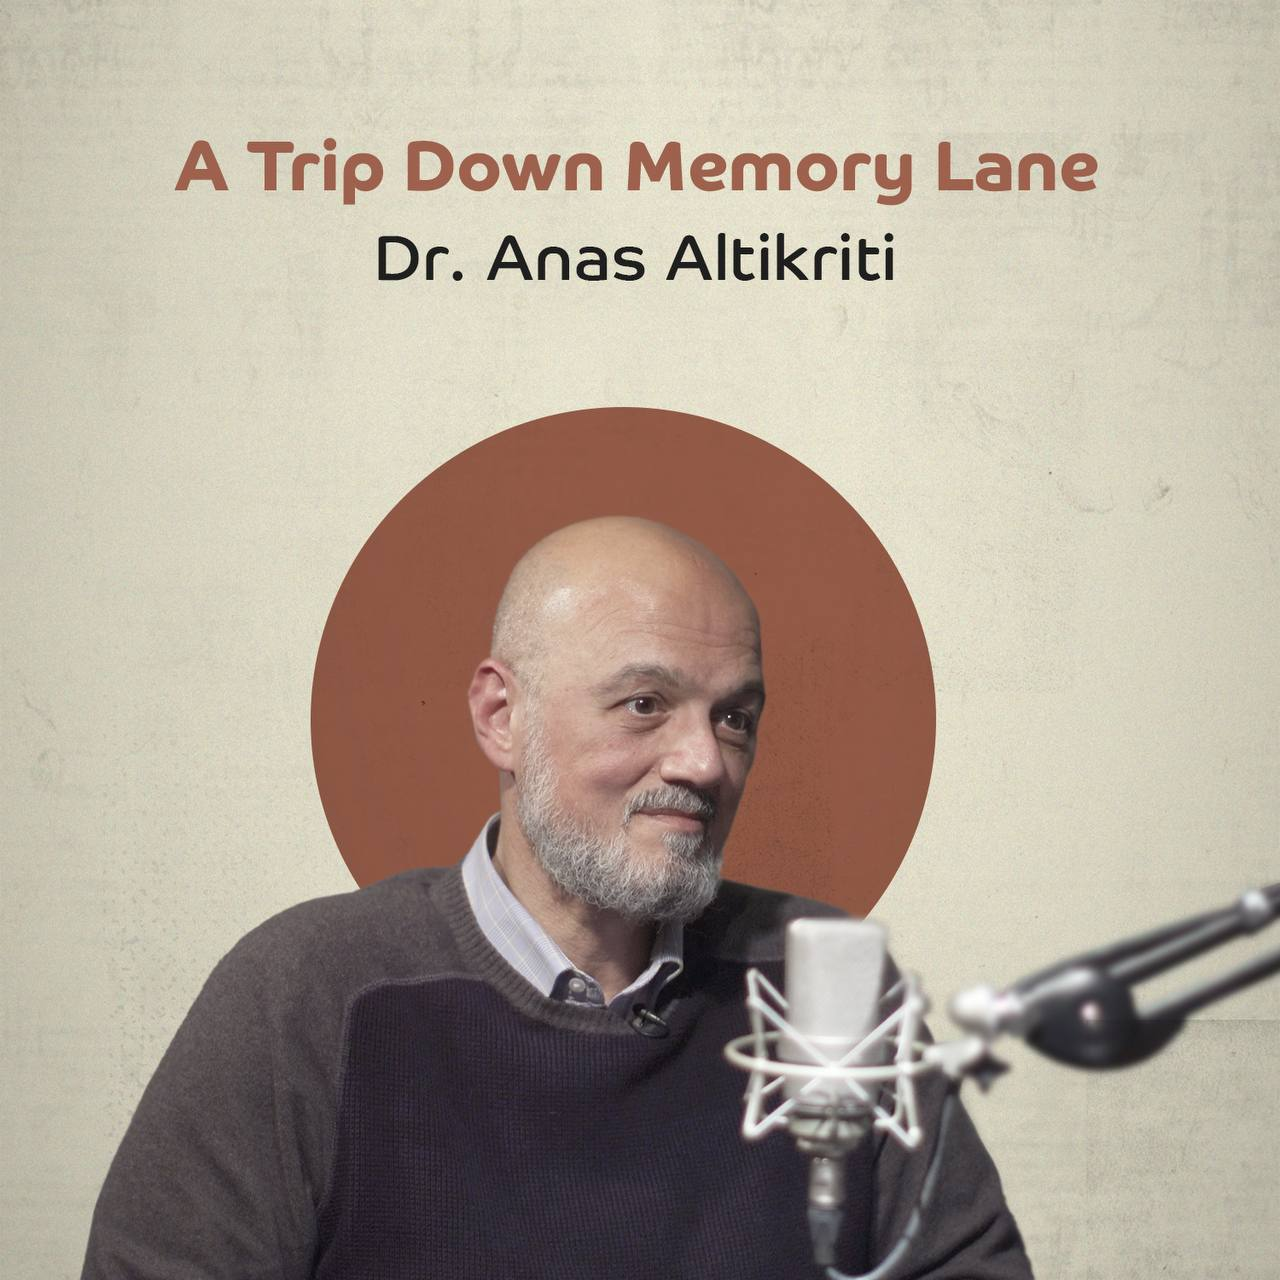 A Trip Down Memory Lane with Dr. Anas Altikriti